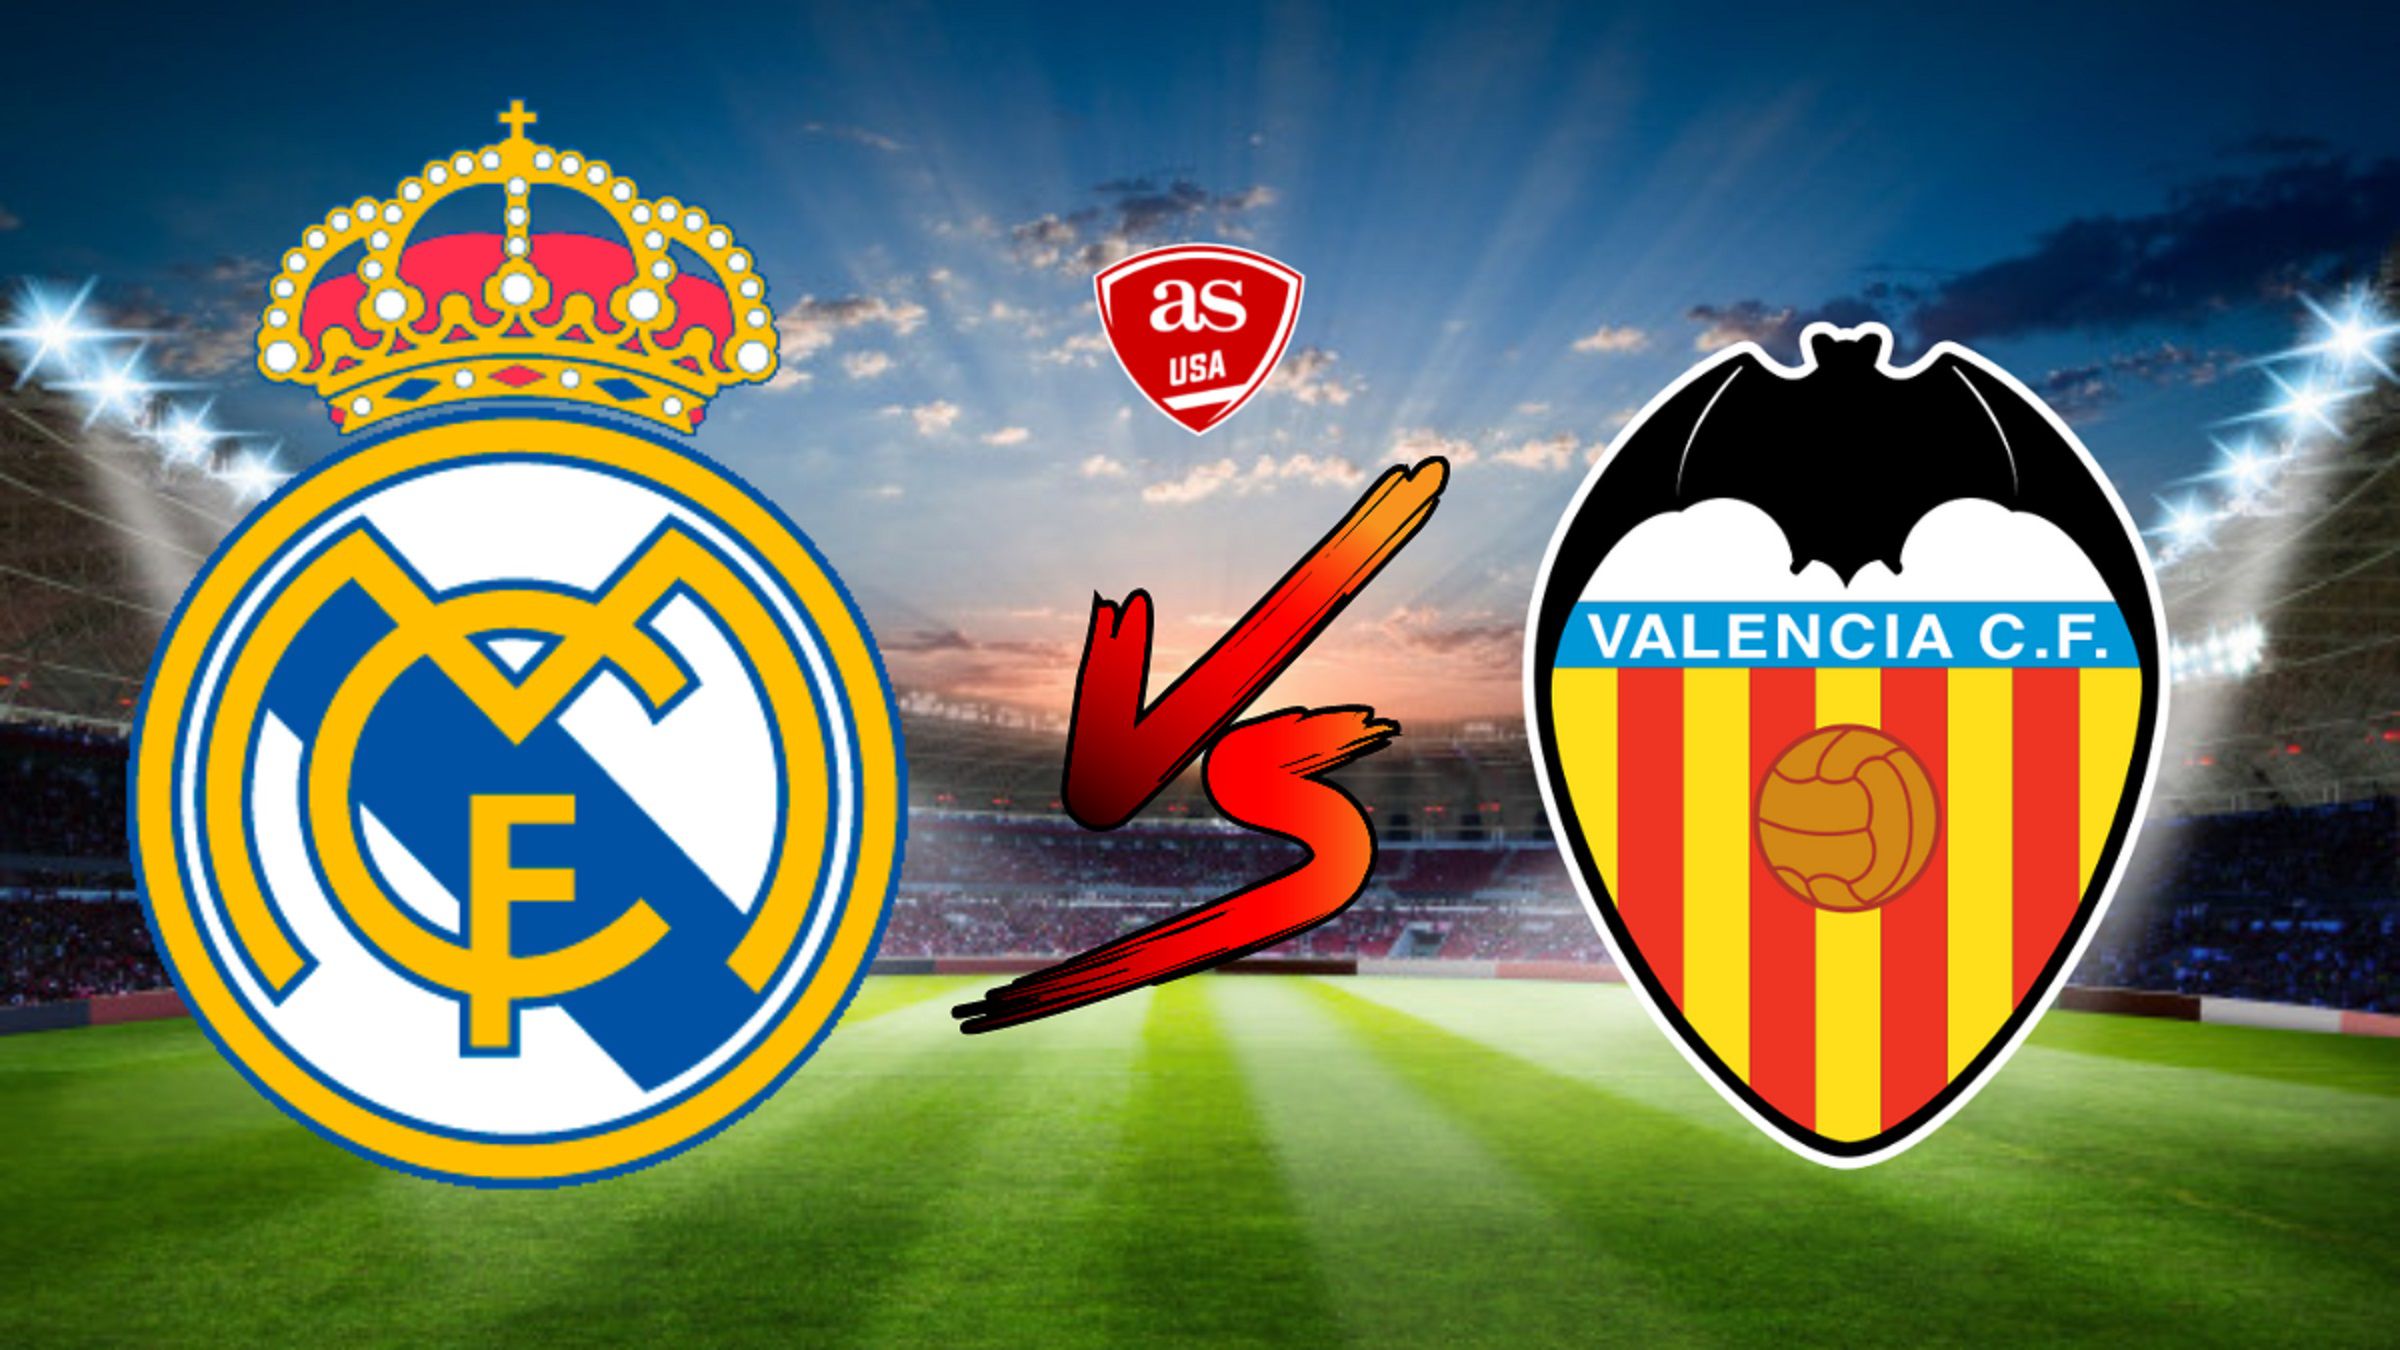 Real Madrid vs Valencia